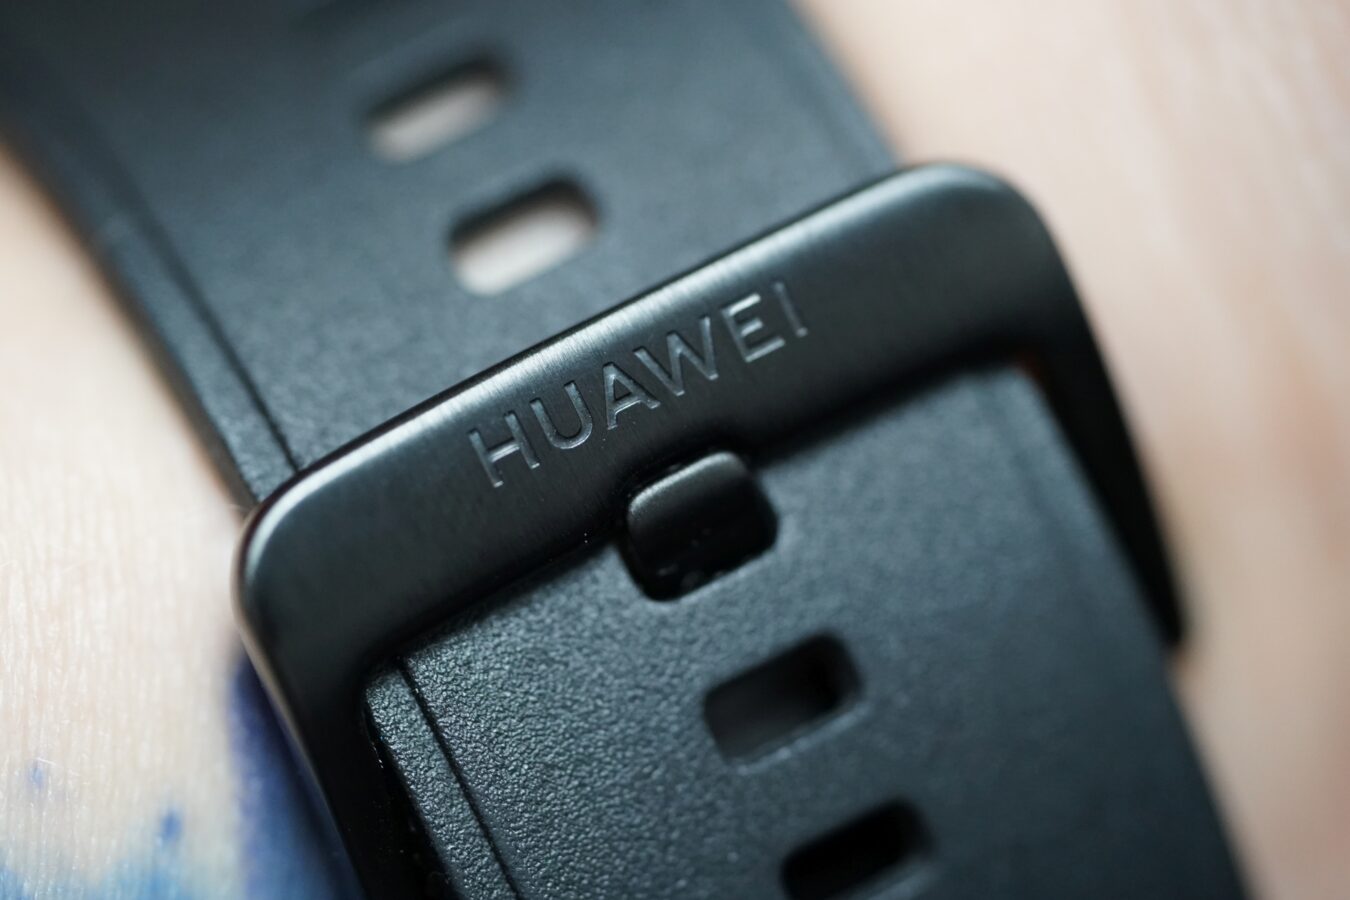 Iată Huawei Watch 3 în toată splendoarea sa!  Știm ce aveți de oferit